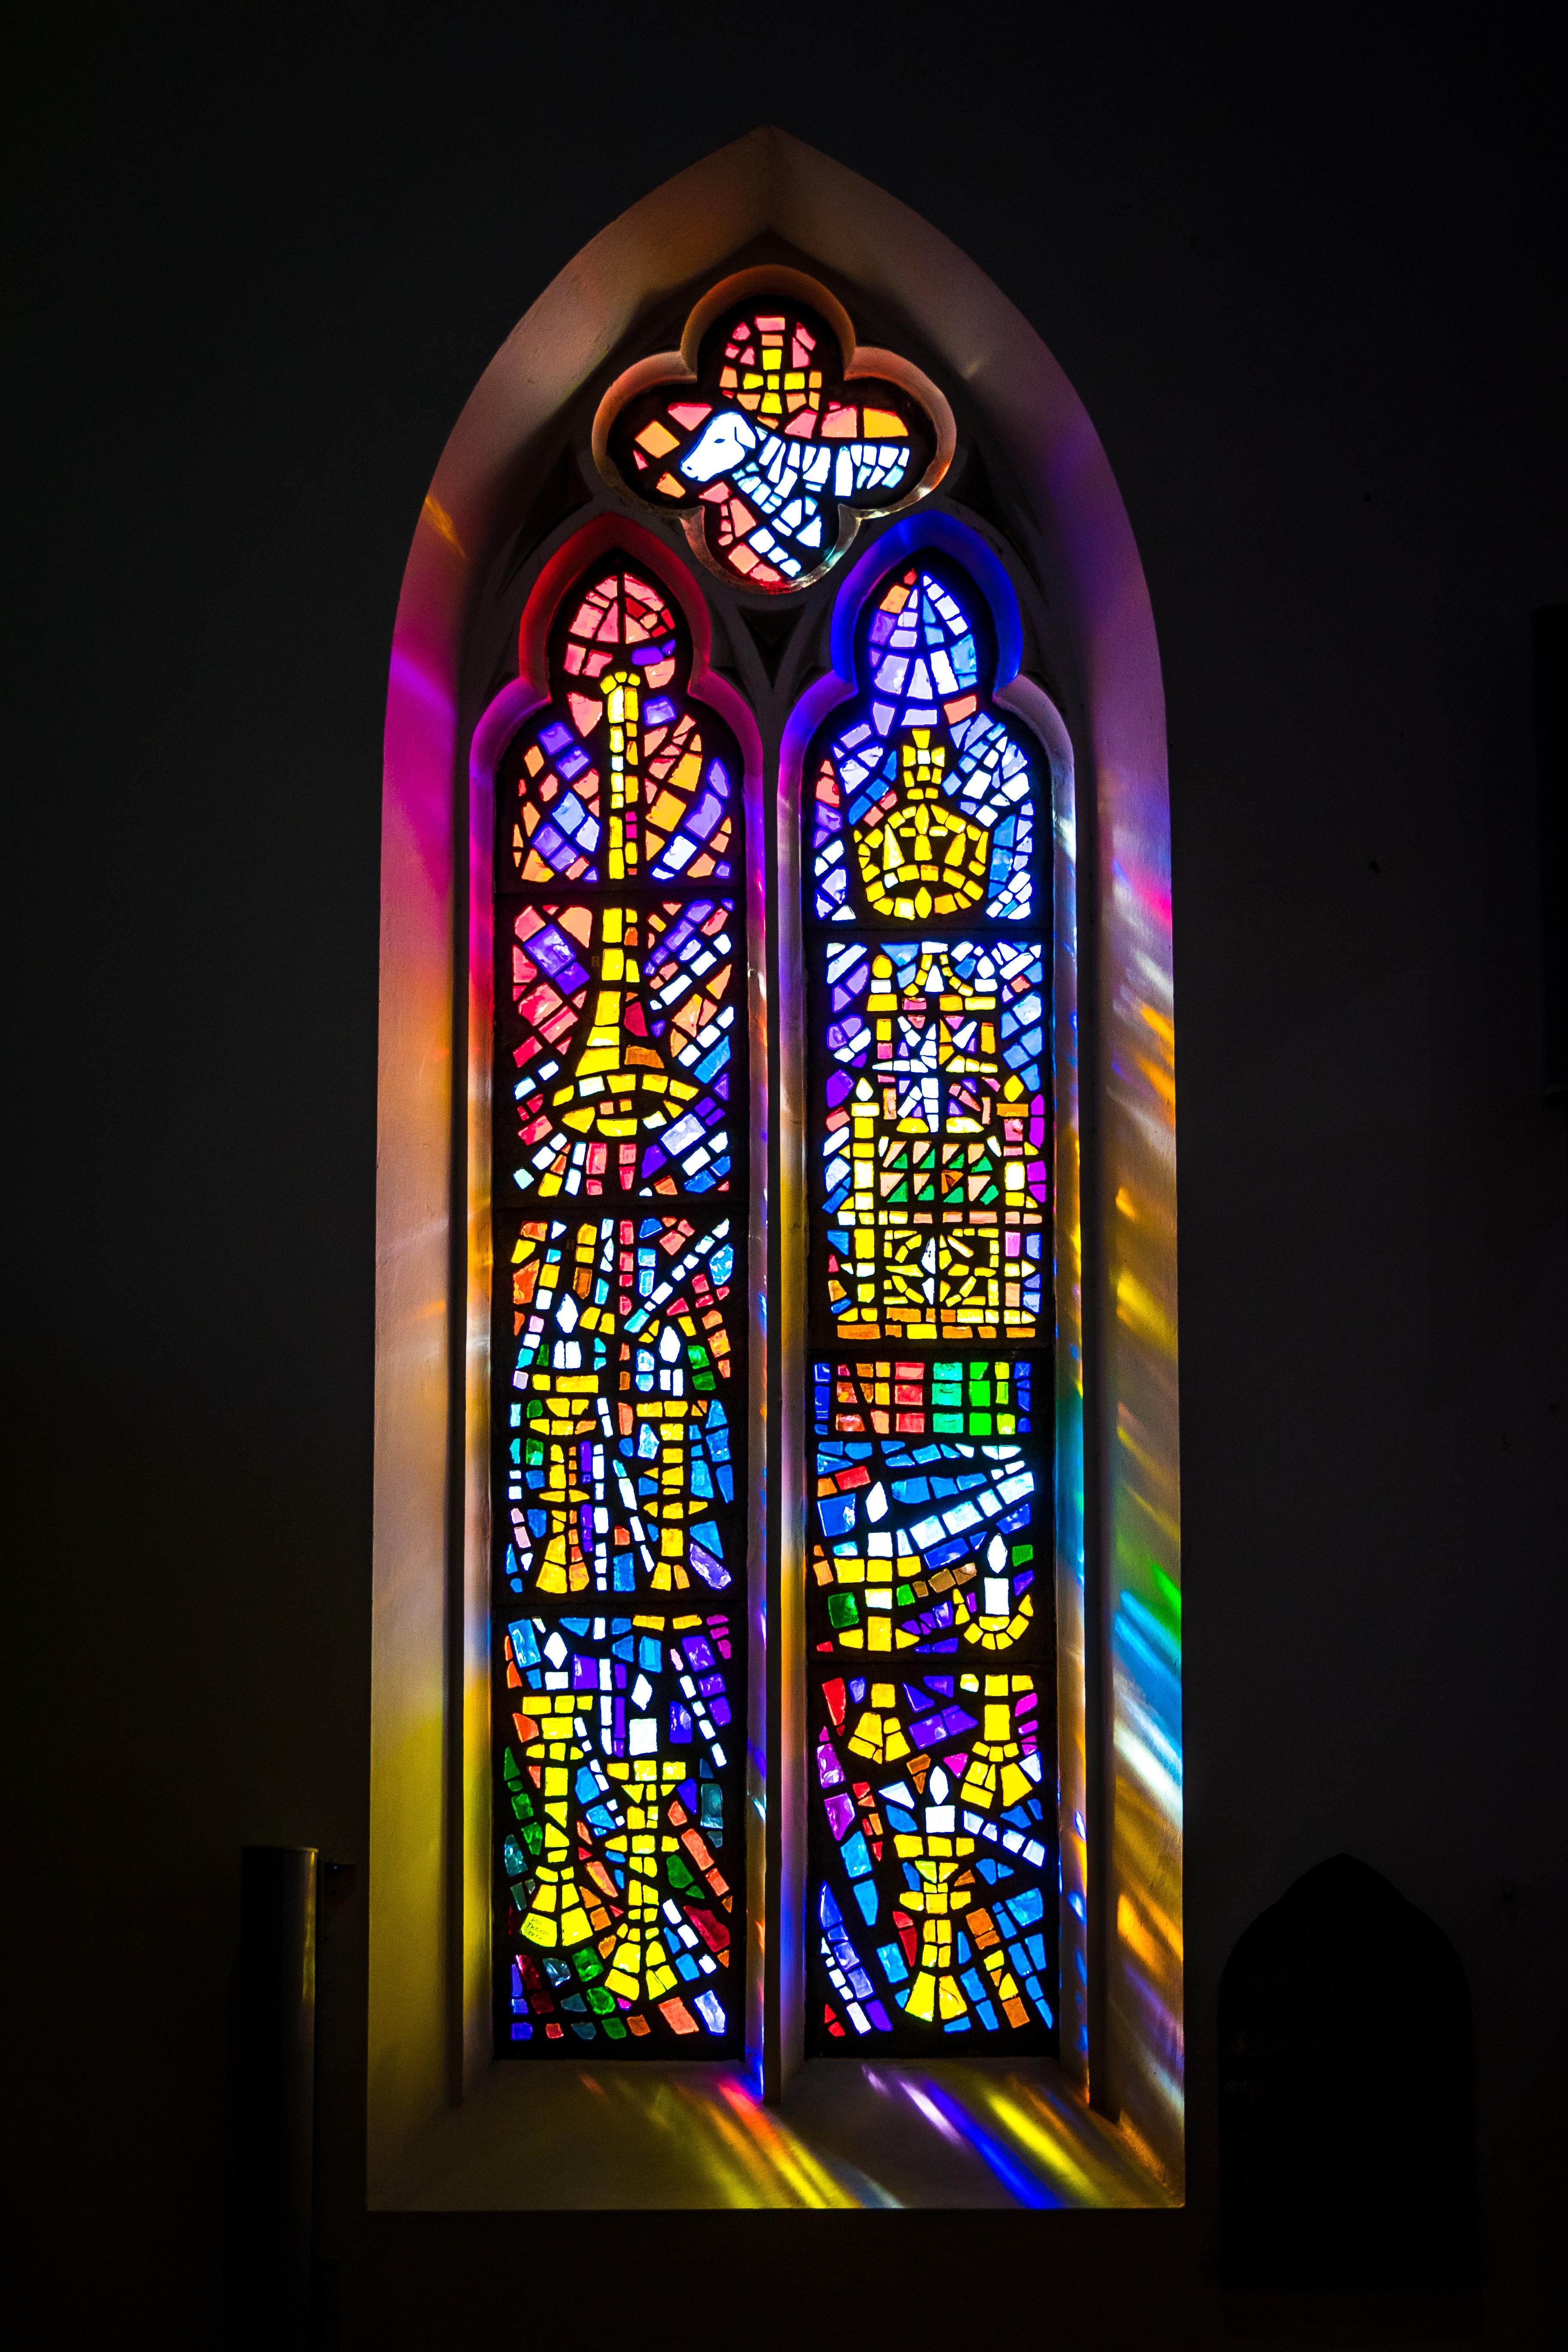 通向天堂的光色盛宴——沙特尔教堂彩色玻璃窗画《圣母子与天使》